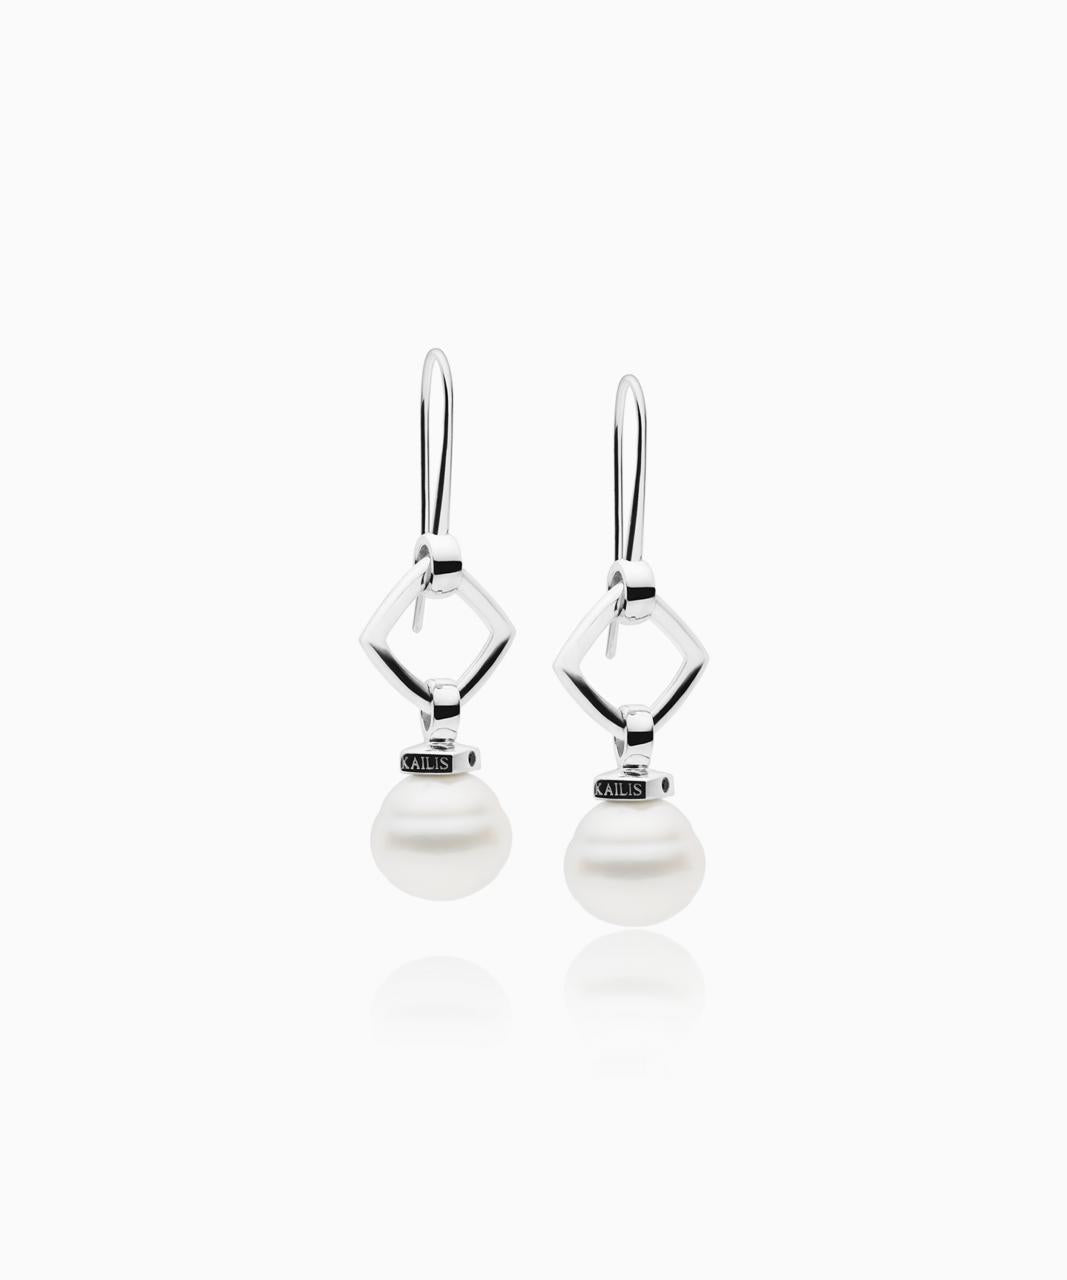 Kailis – Geometric Pearl Earrings, Sterling Silver